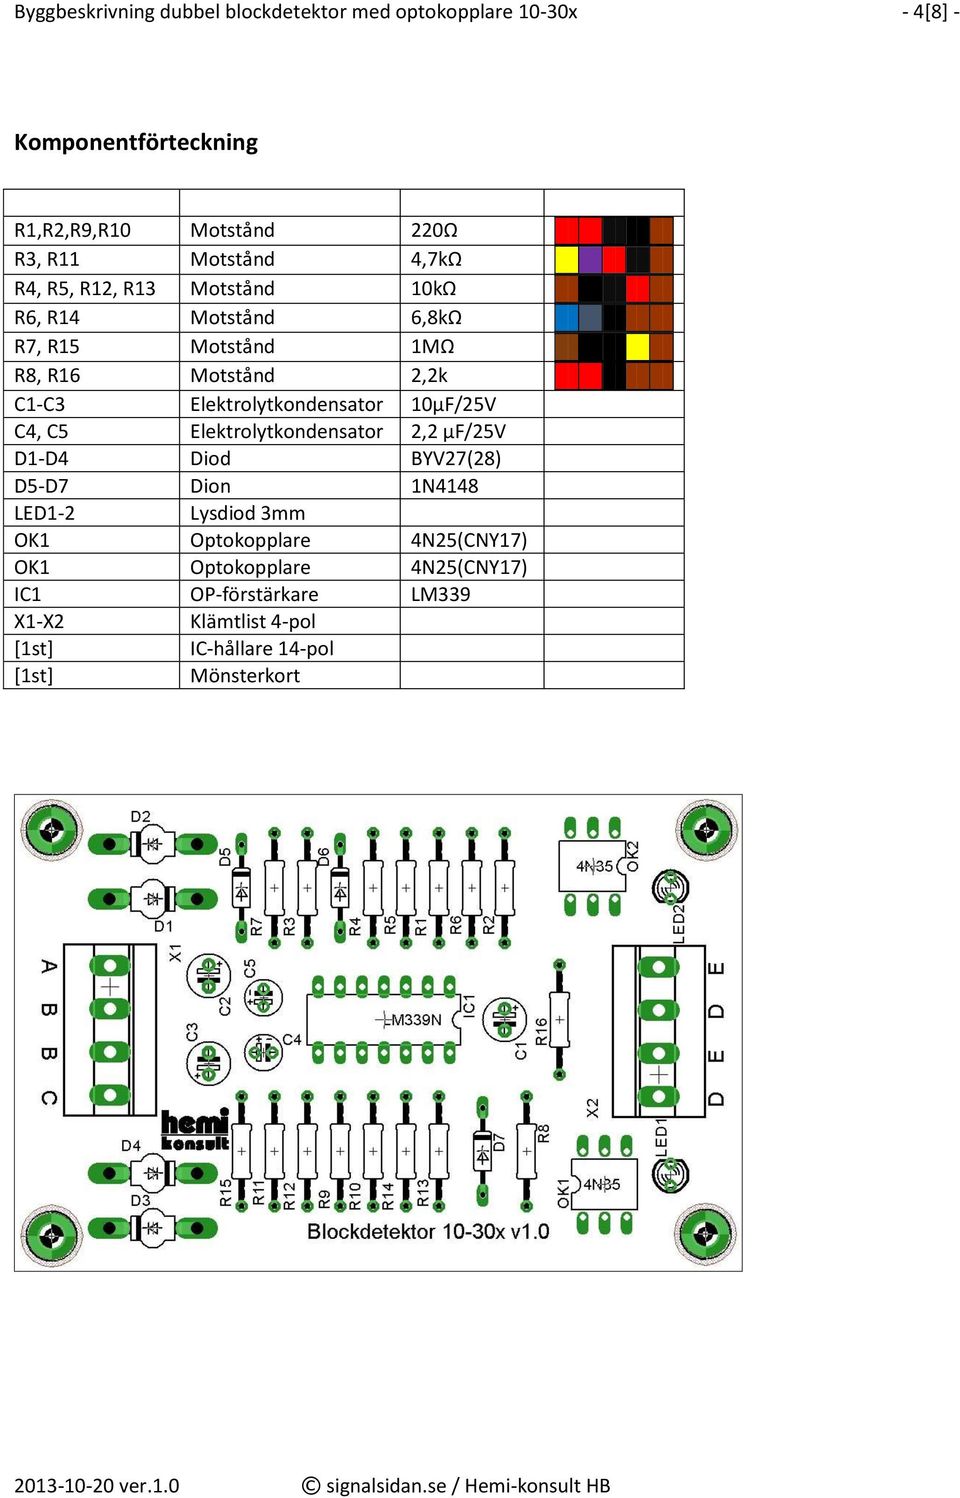 Elektrolytkondensator 10µF/25V C4, C5 Elektrolytkondensator 2,2 µf/25v D1-D4 Diod BYV27(28) D5-D7 Dion 1N4148 LED1-2 Lysdiod 3mm